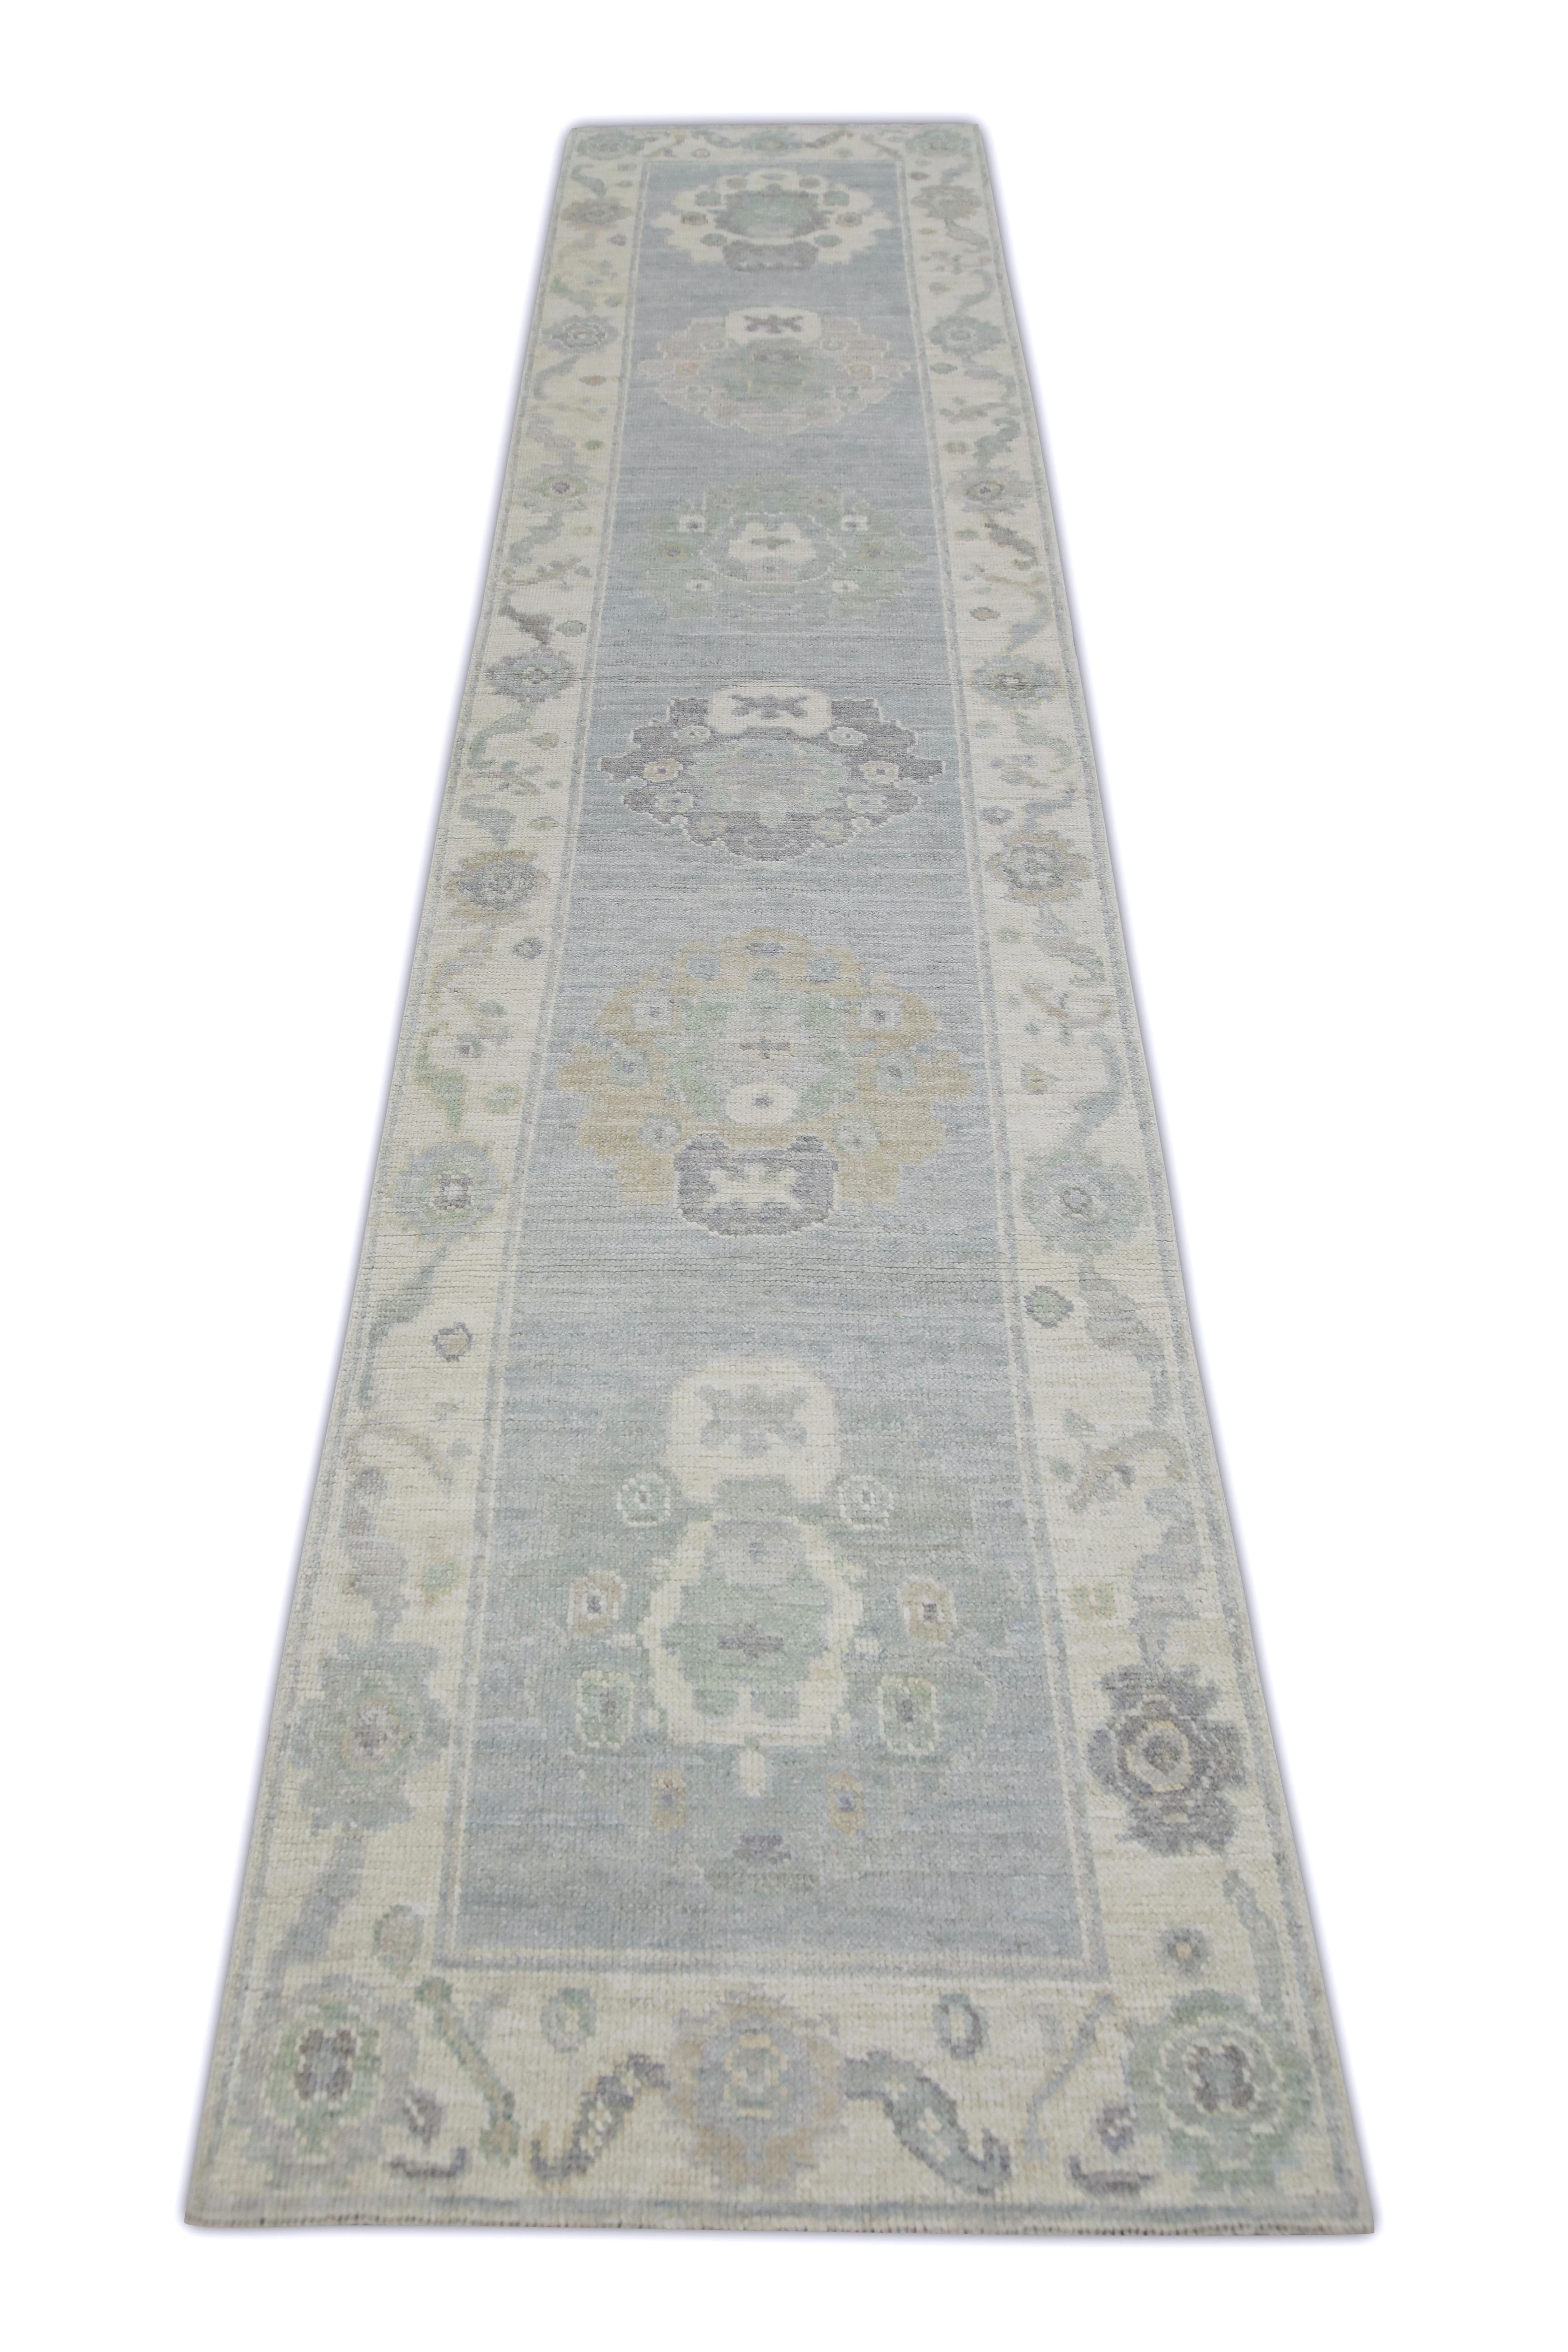 Ce tapis turc oushak est une œuvre d'art étonnante, tissée à la main selon des techniques traditionnelles par des artisans qualifiés. Le tapis présente des motifs complexes et une palette de couleurs douces obtenue grâce à l'utilisation de teintures